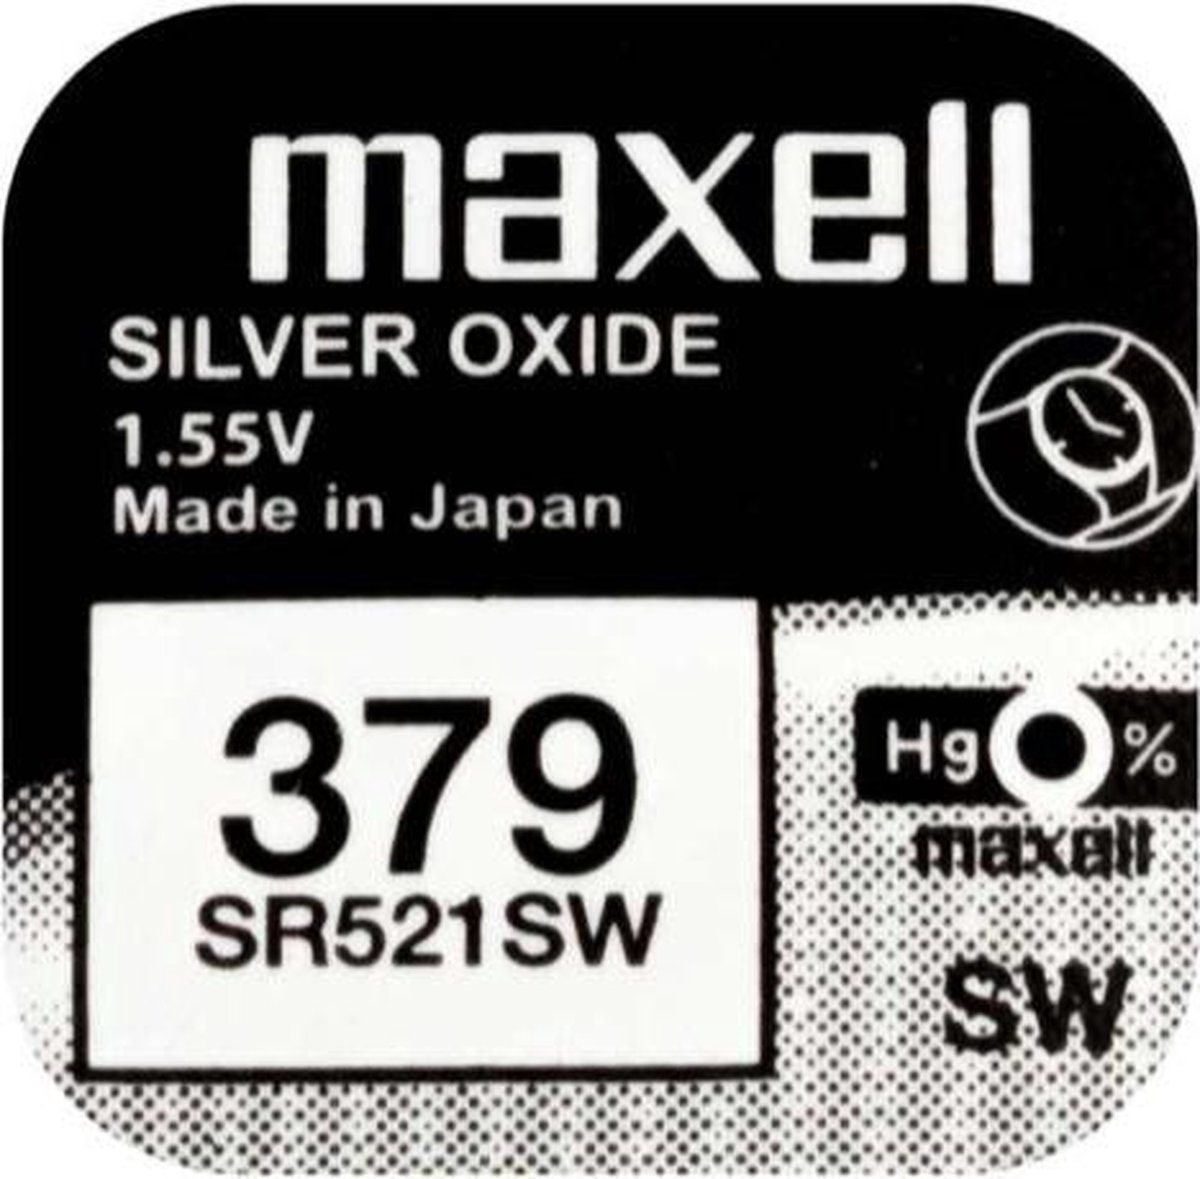 MAXELL 379 / SR521SW zilveroxide knoopcel horlogebatterij 1 (een) stuks